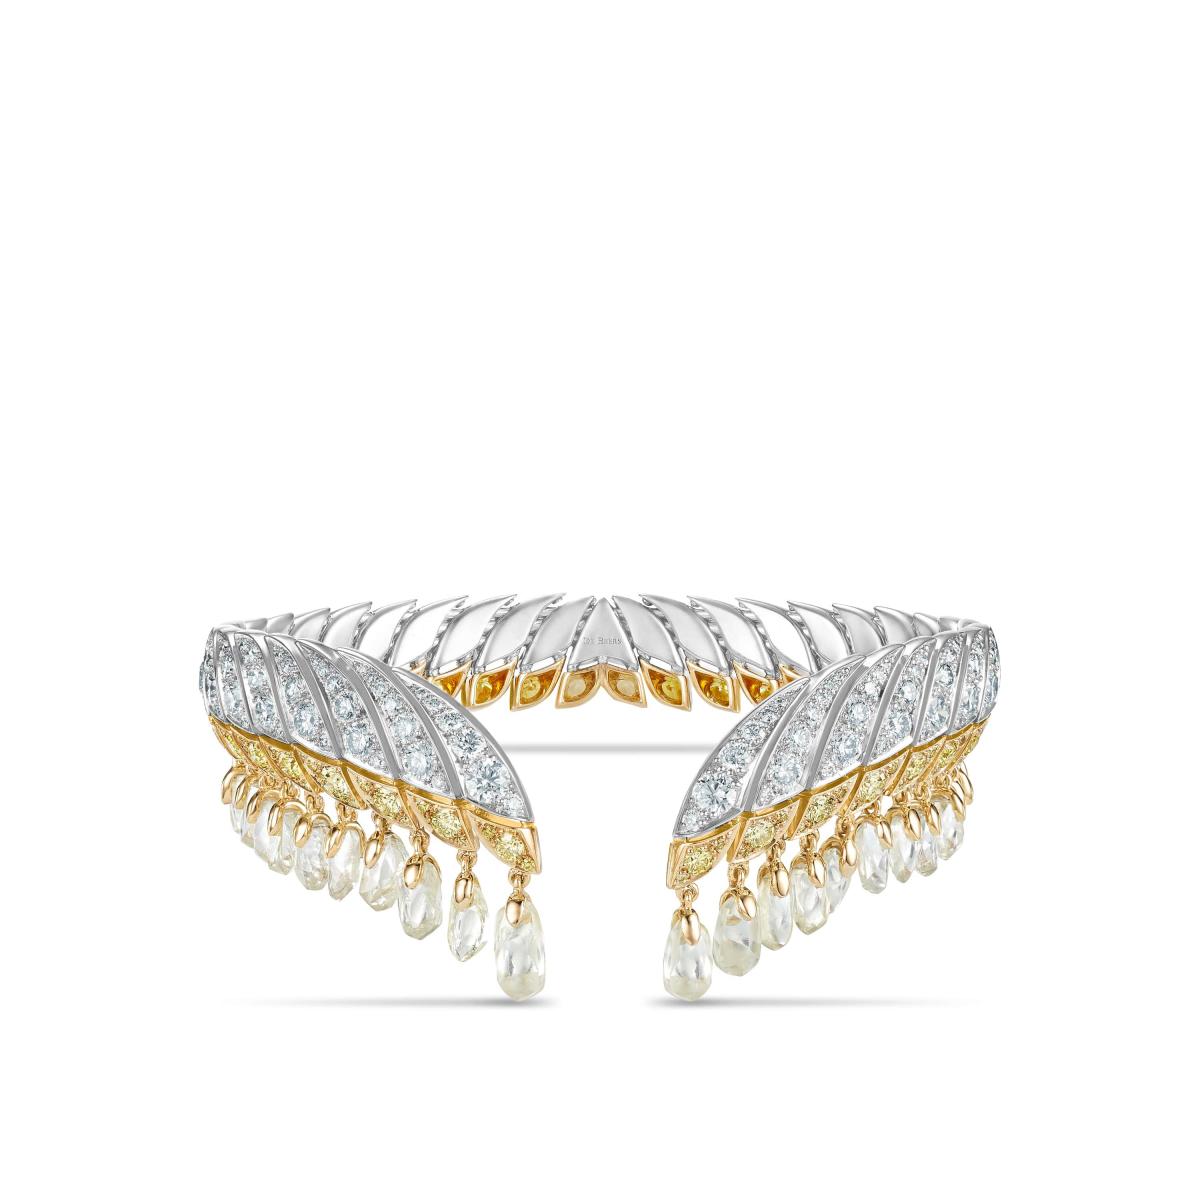 De Beers Jewellers du bracelet Nefertiti en or, diamants blancs et diamants jaunes